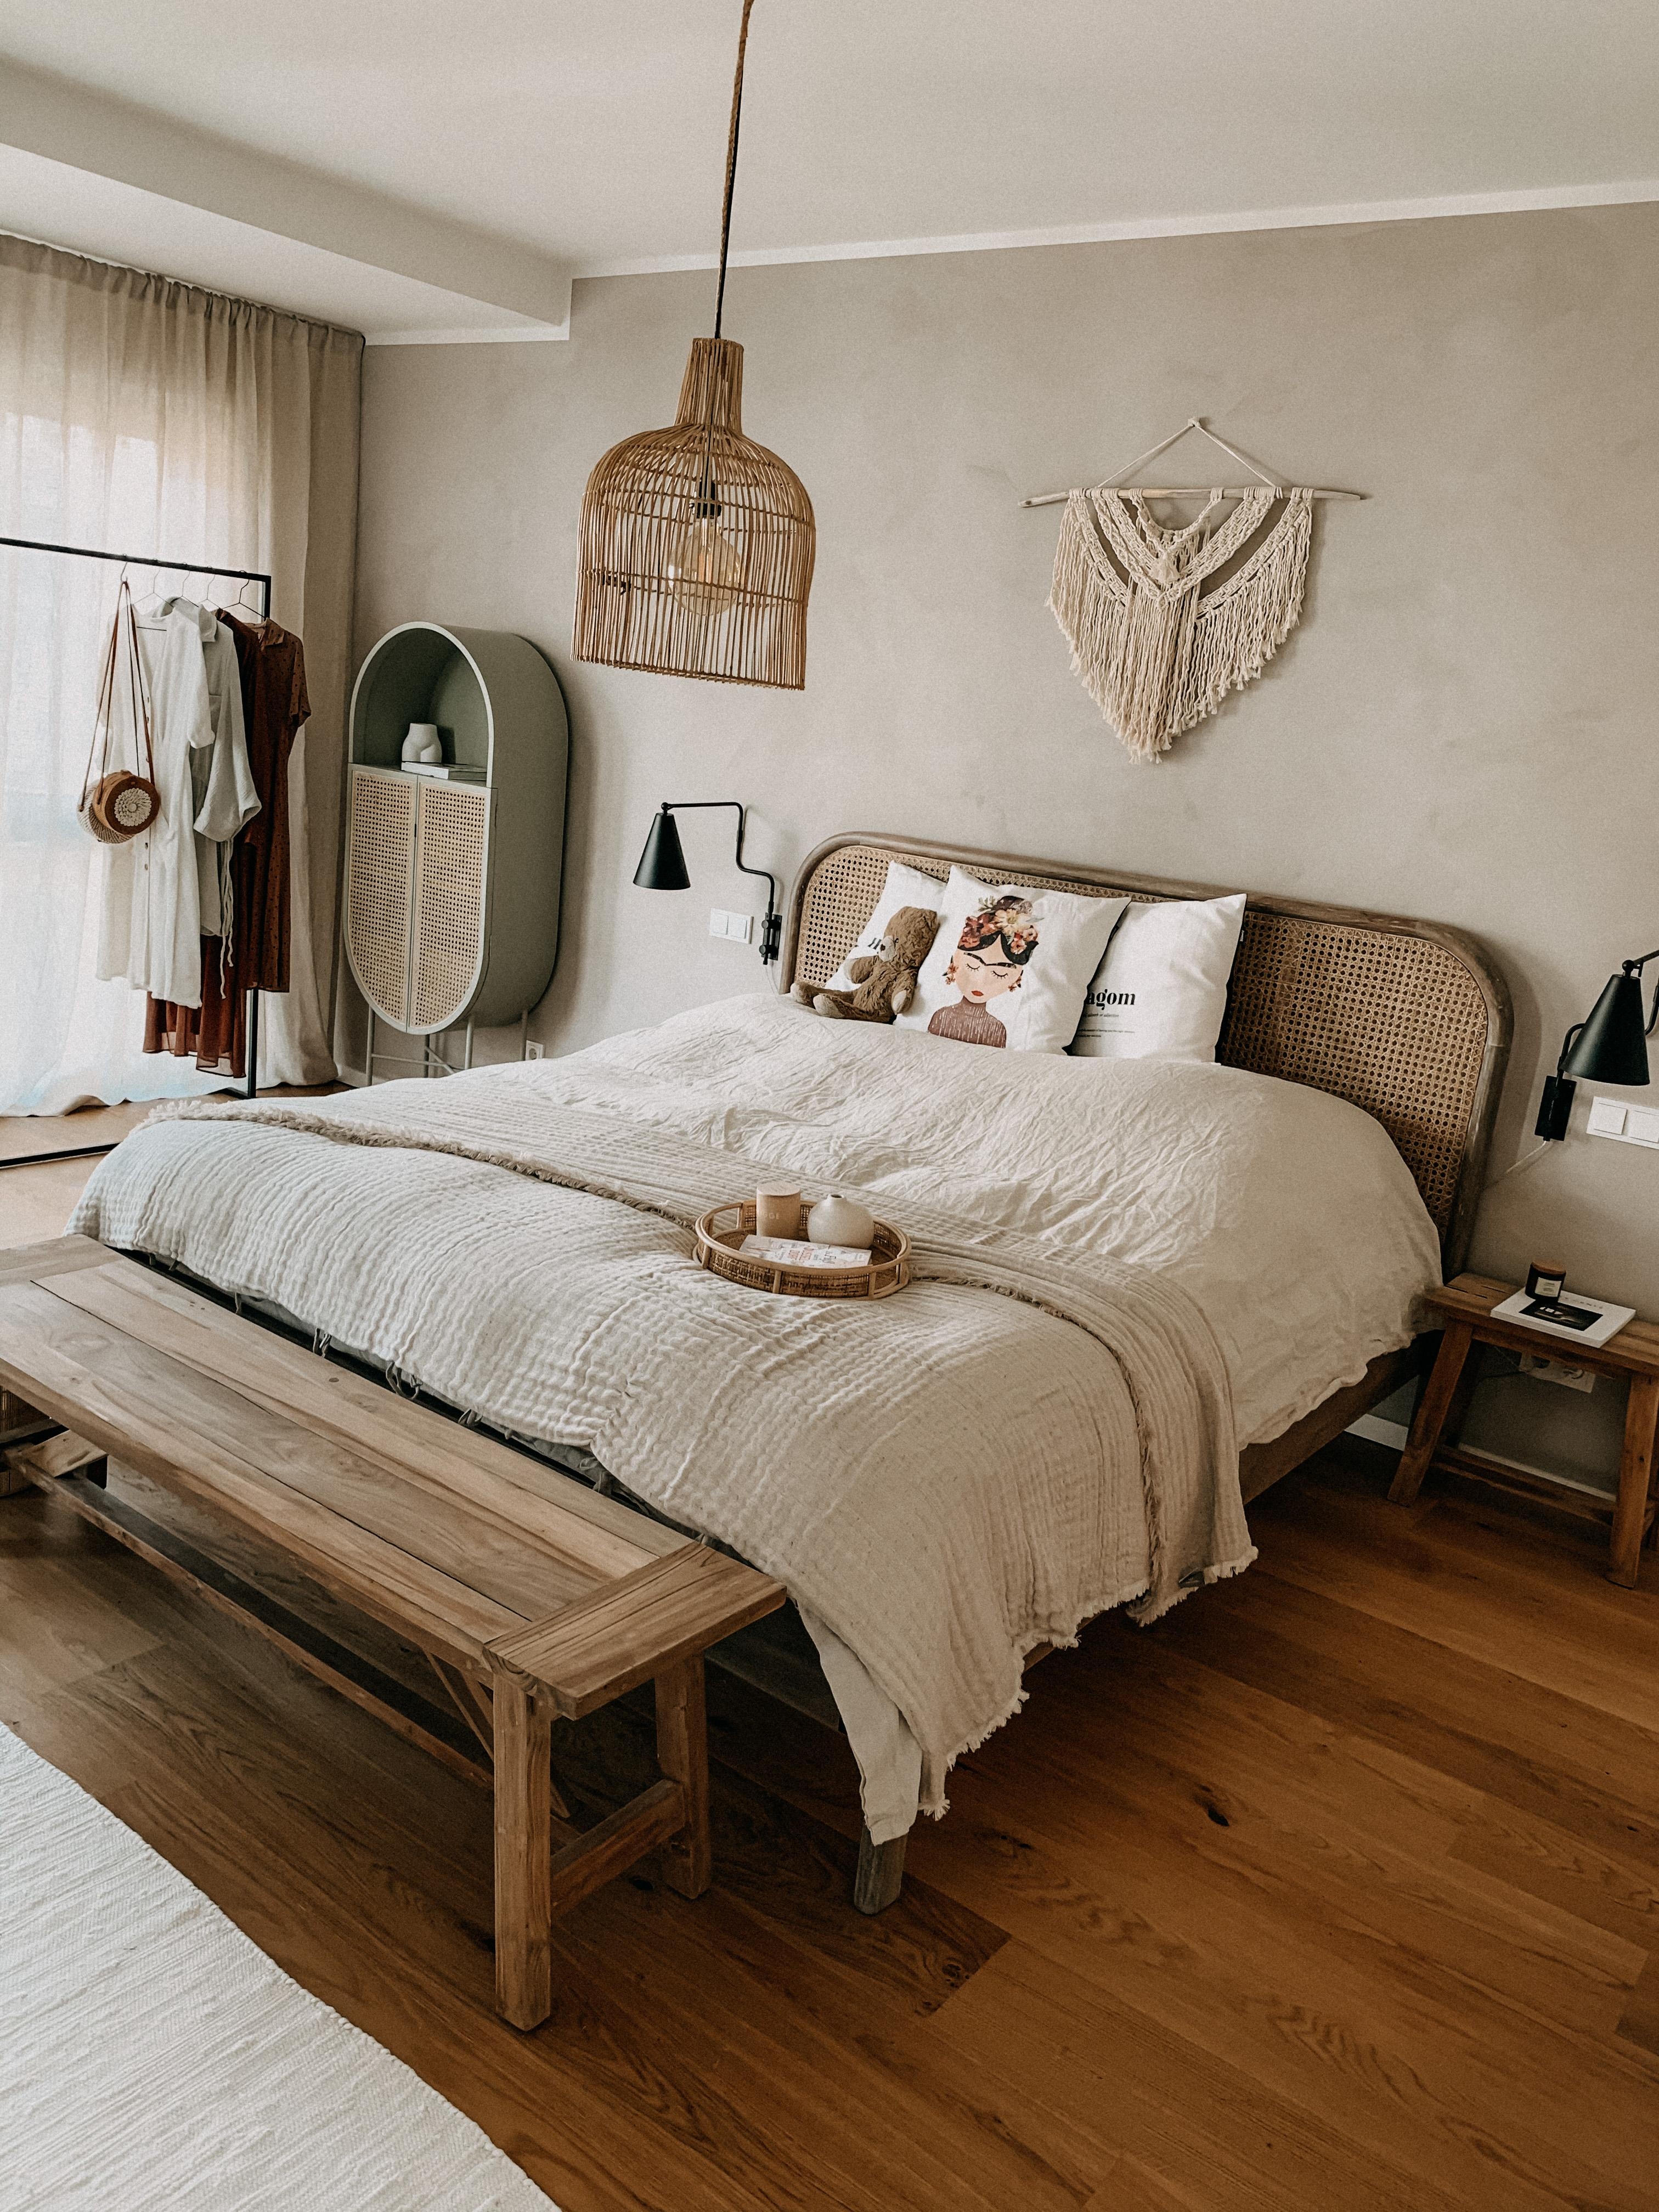 Das ist das gemütlichste Schlafzimmer in dem ich je geschlafen habe. 🤍 🙏🏼 #bedroominspo